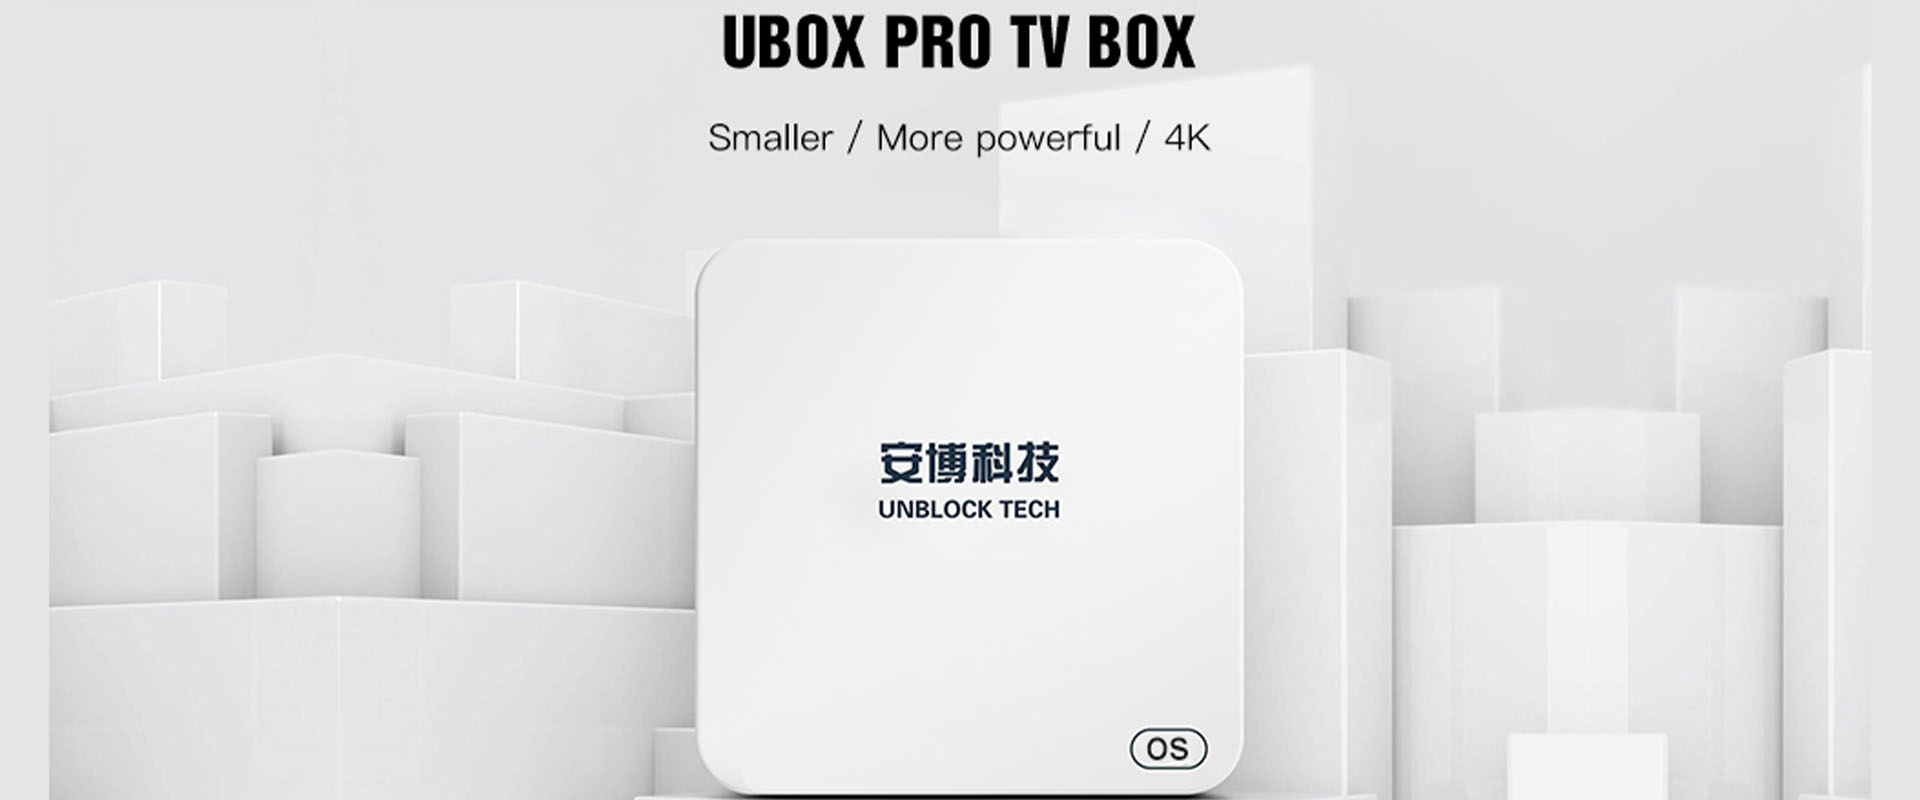 Ubox5 Pro TV Box - I-unblock ang Tech Pinakabagong Bersyon UBOX Gen 5 Pro Max